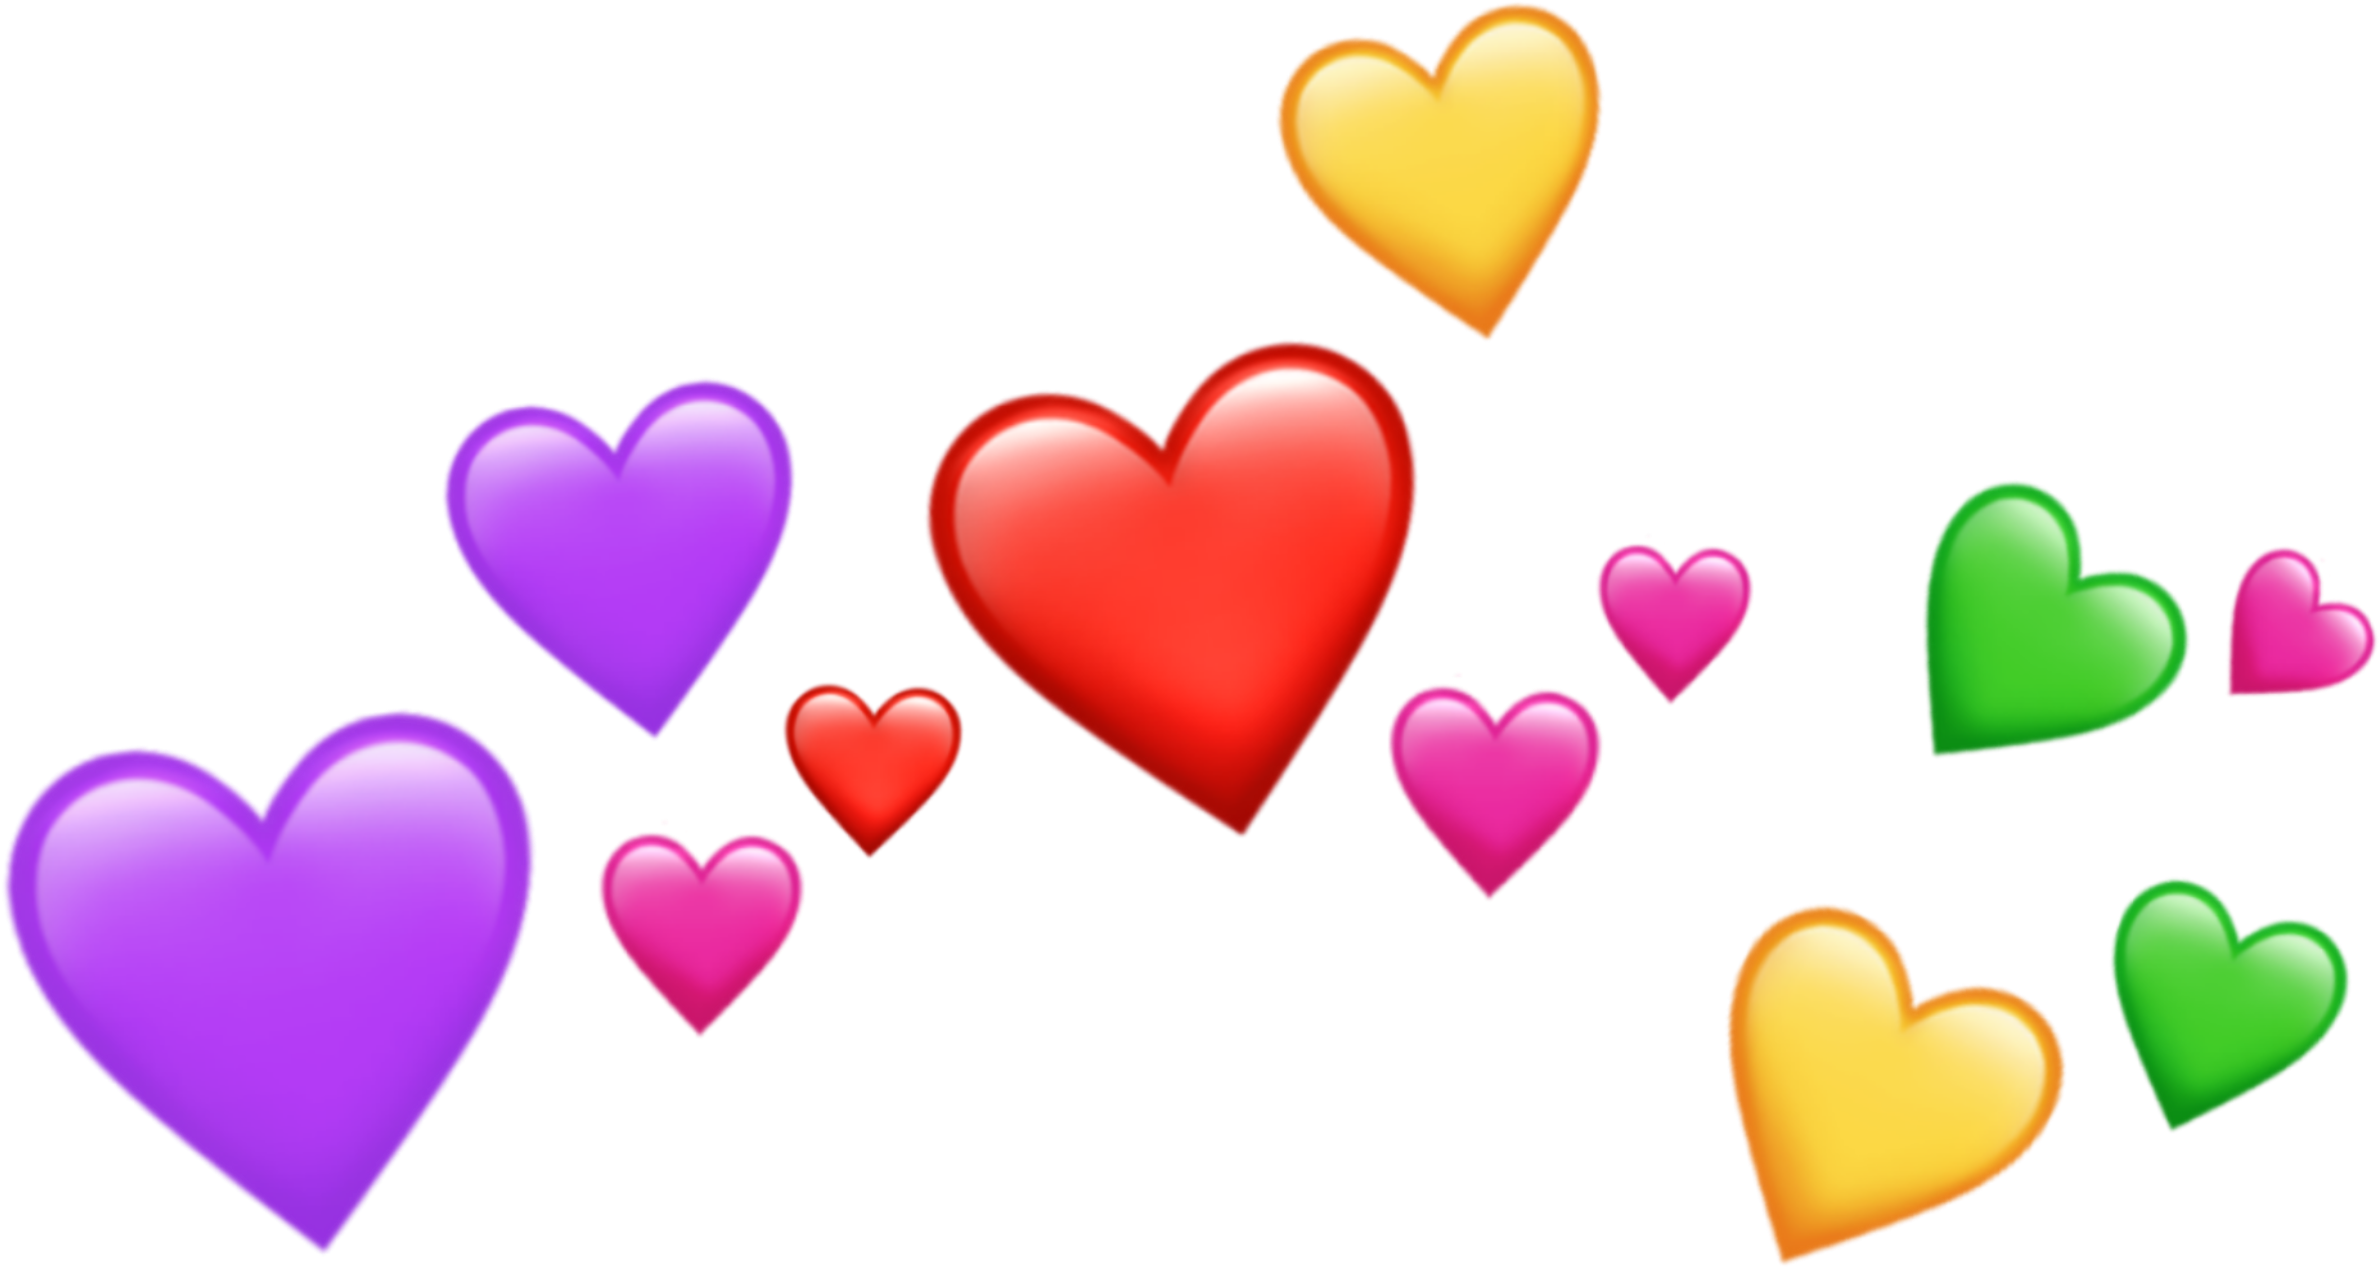 Emoji Heart PNG Image Background